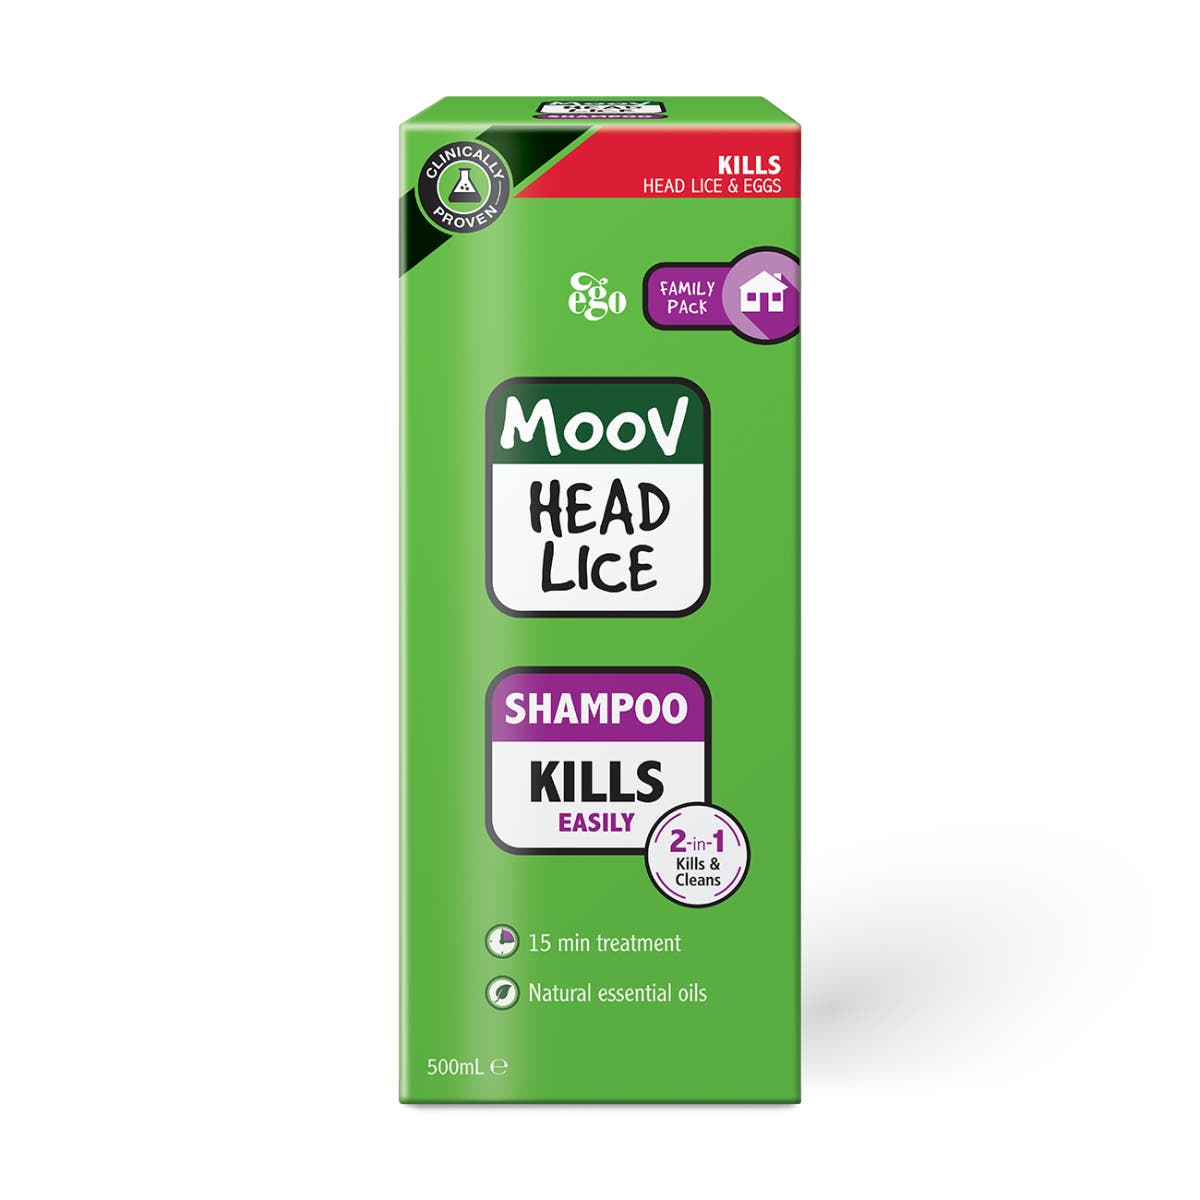 MOOV Head Lice Shampoo 500mL